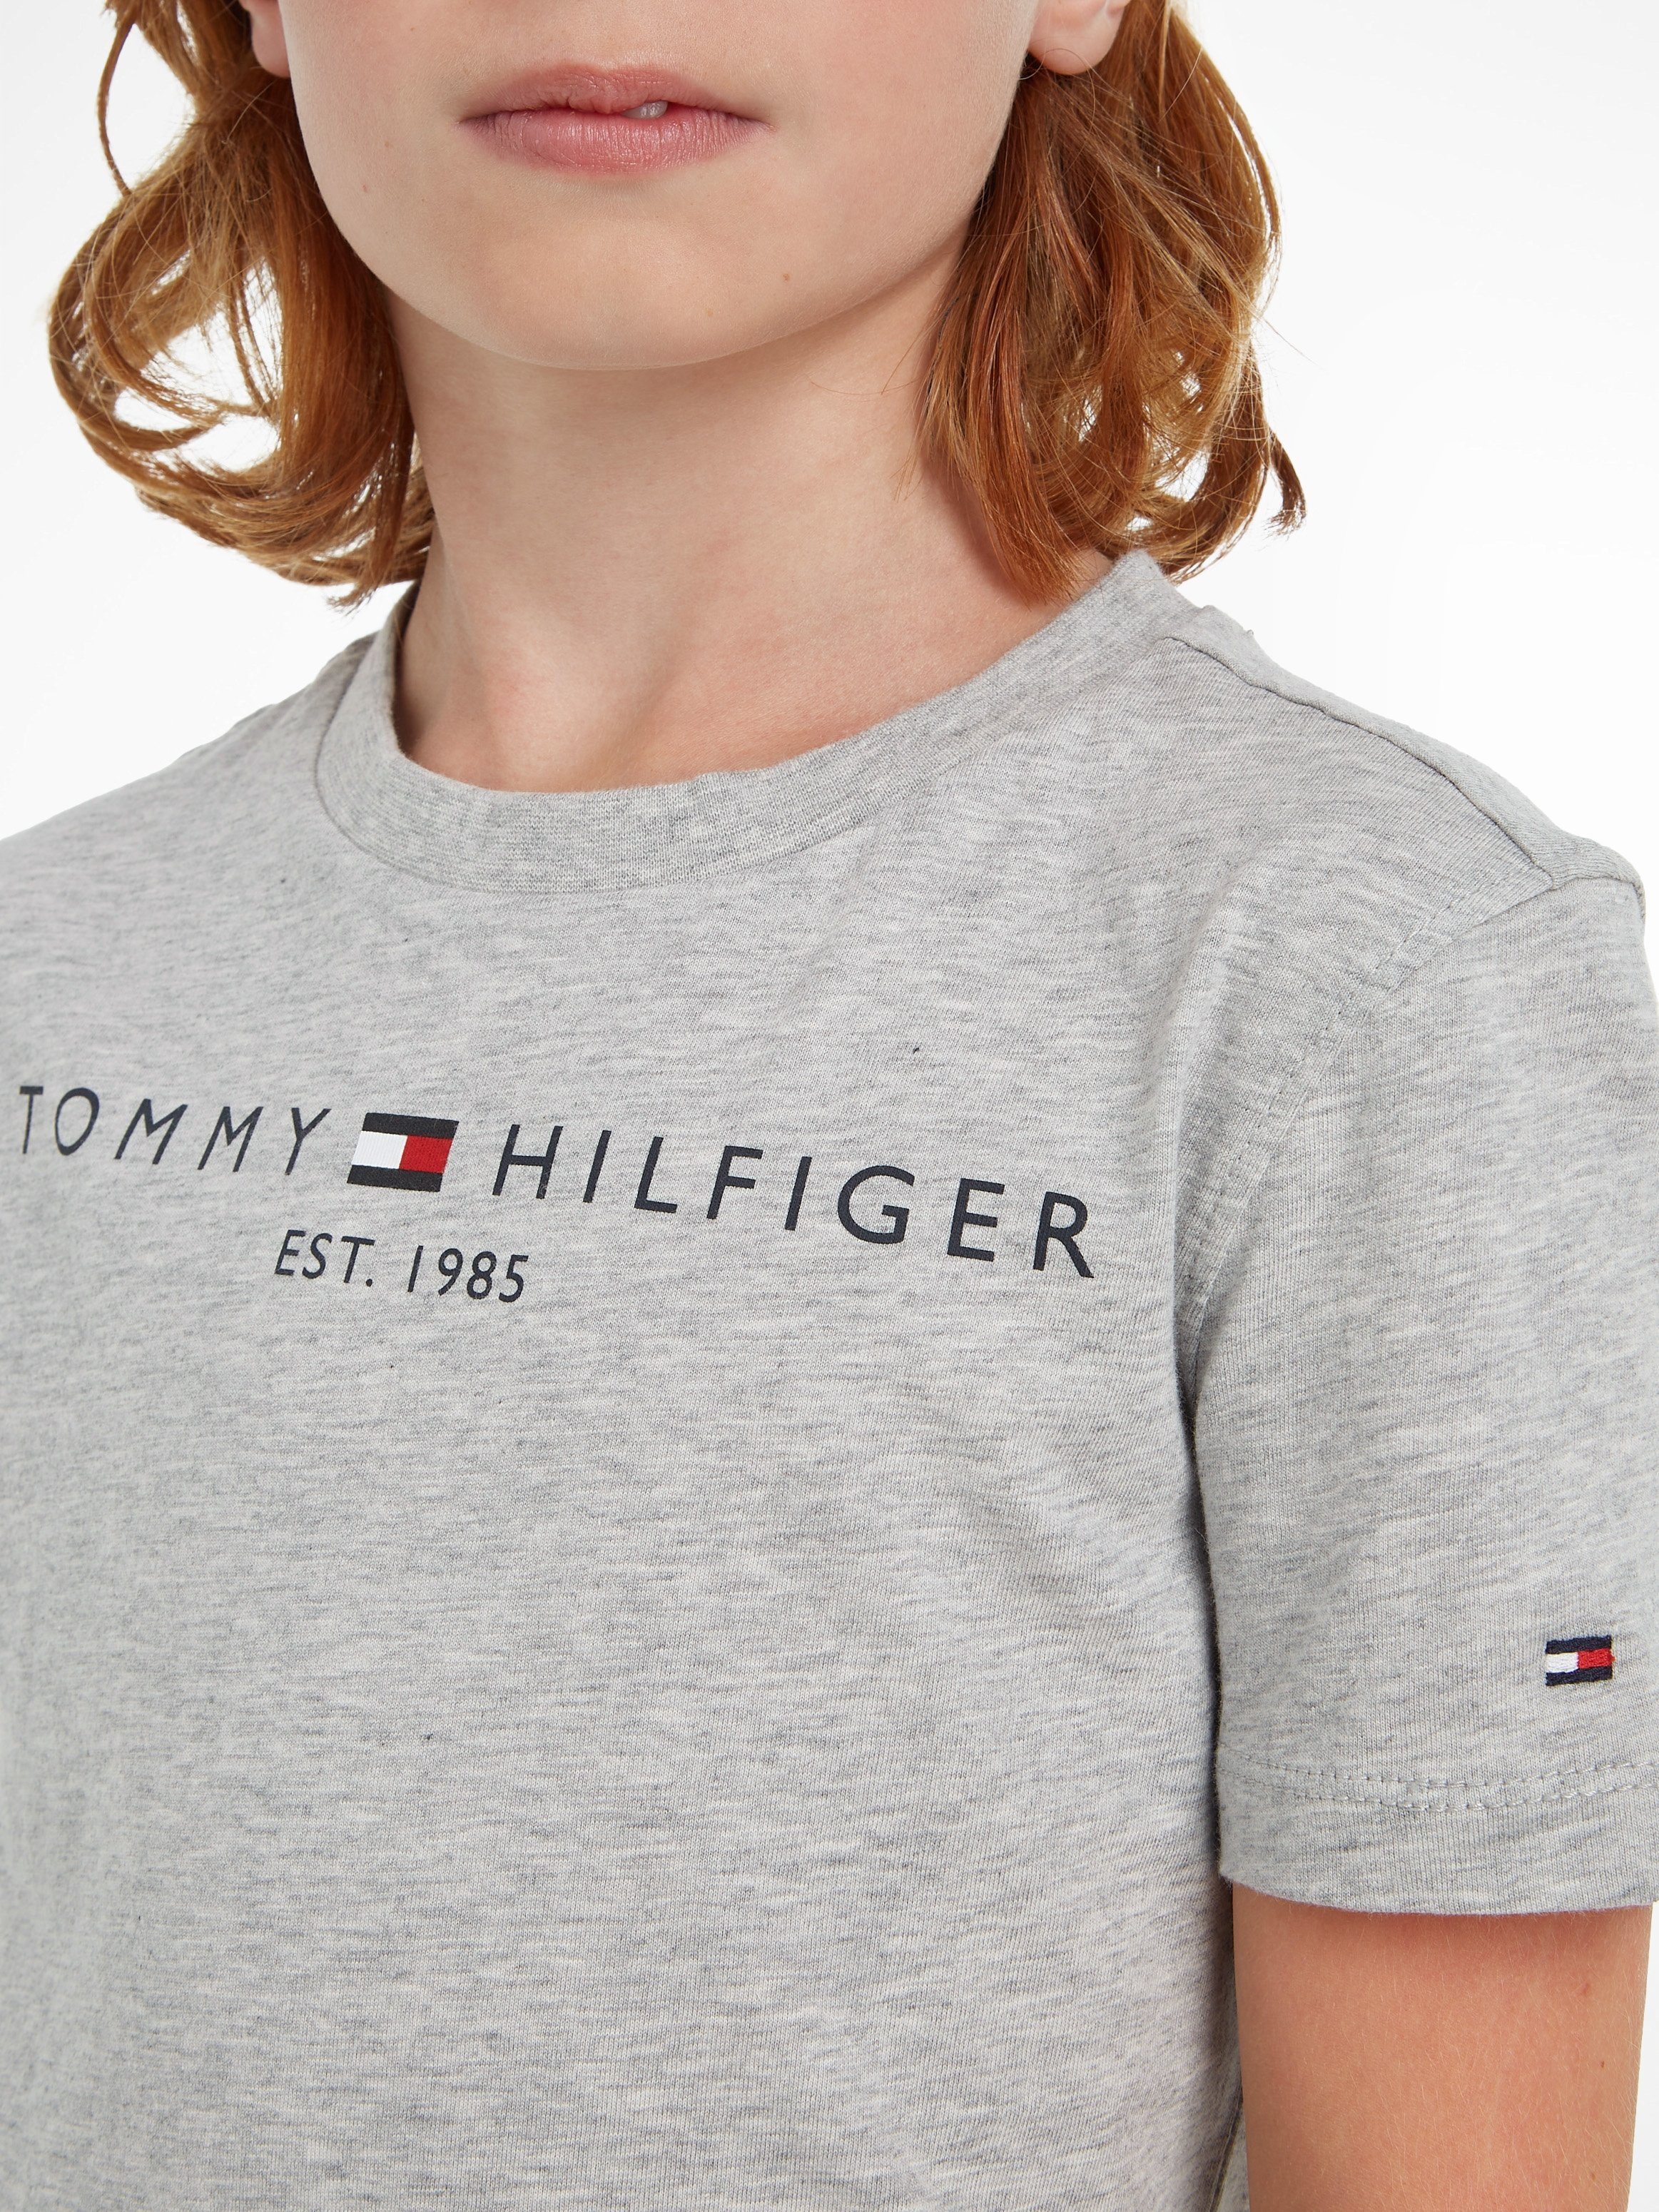 Tommy Hilfiger T-Shirt Junior Kinder Jungen und ESSENTIAL Kids MiniMe,für Mädchen TEE